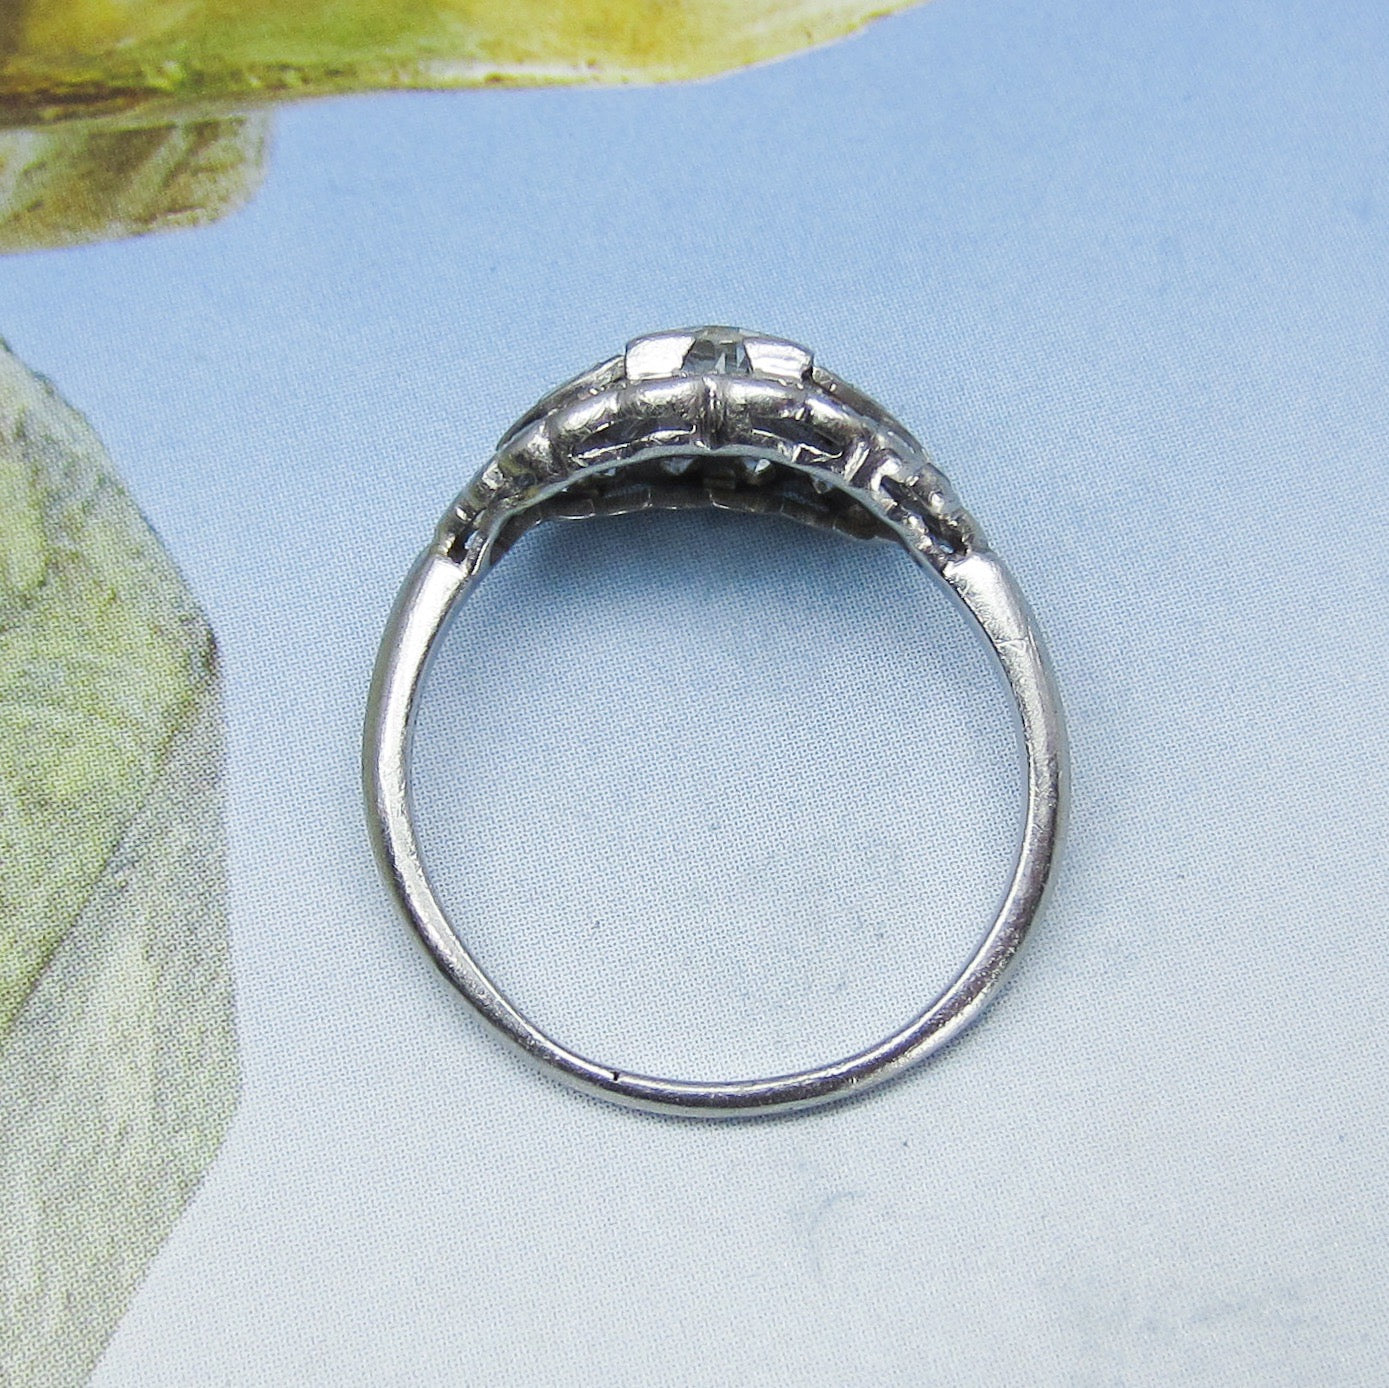 SOLD--Art Deco Old European Diamond Engagement Ring Platinum c. 1930